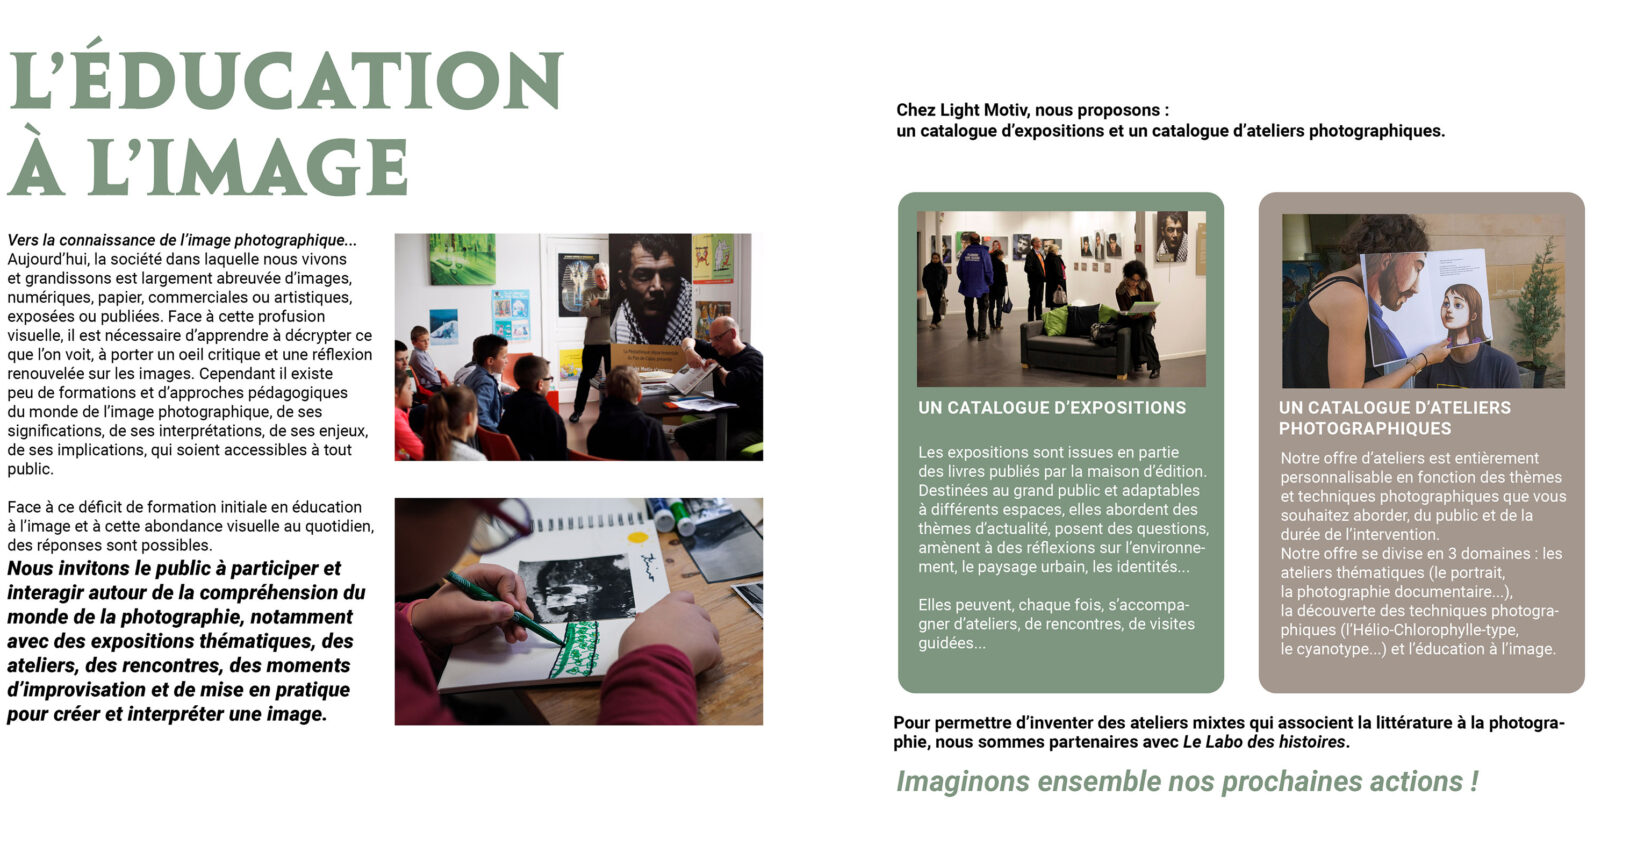 Le programme d'éducation à l'image de l'agence photographique Light Motiv à Lille (Hauts-de-France)